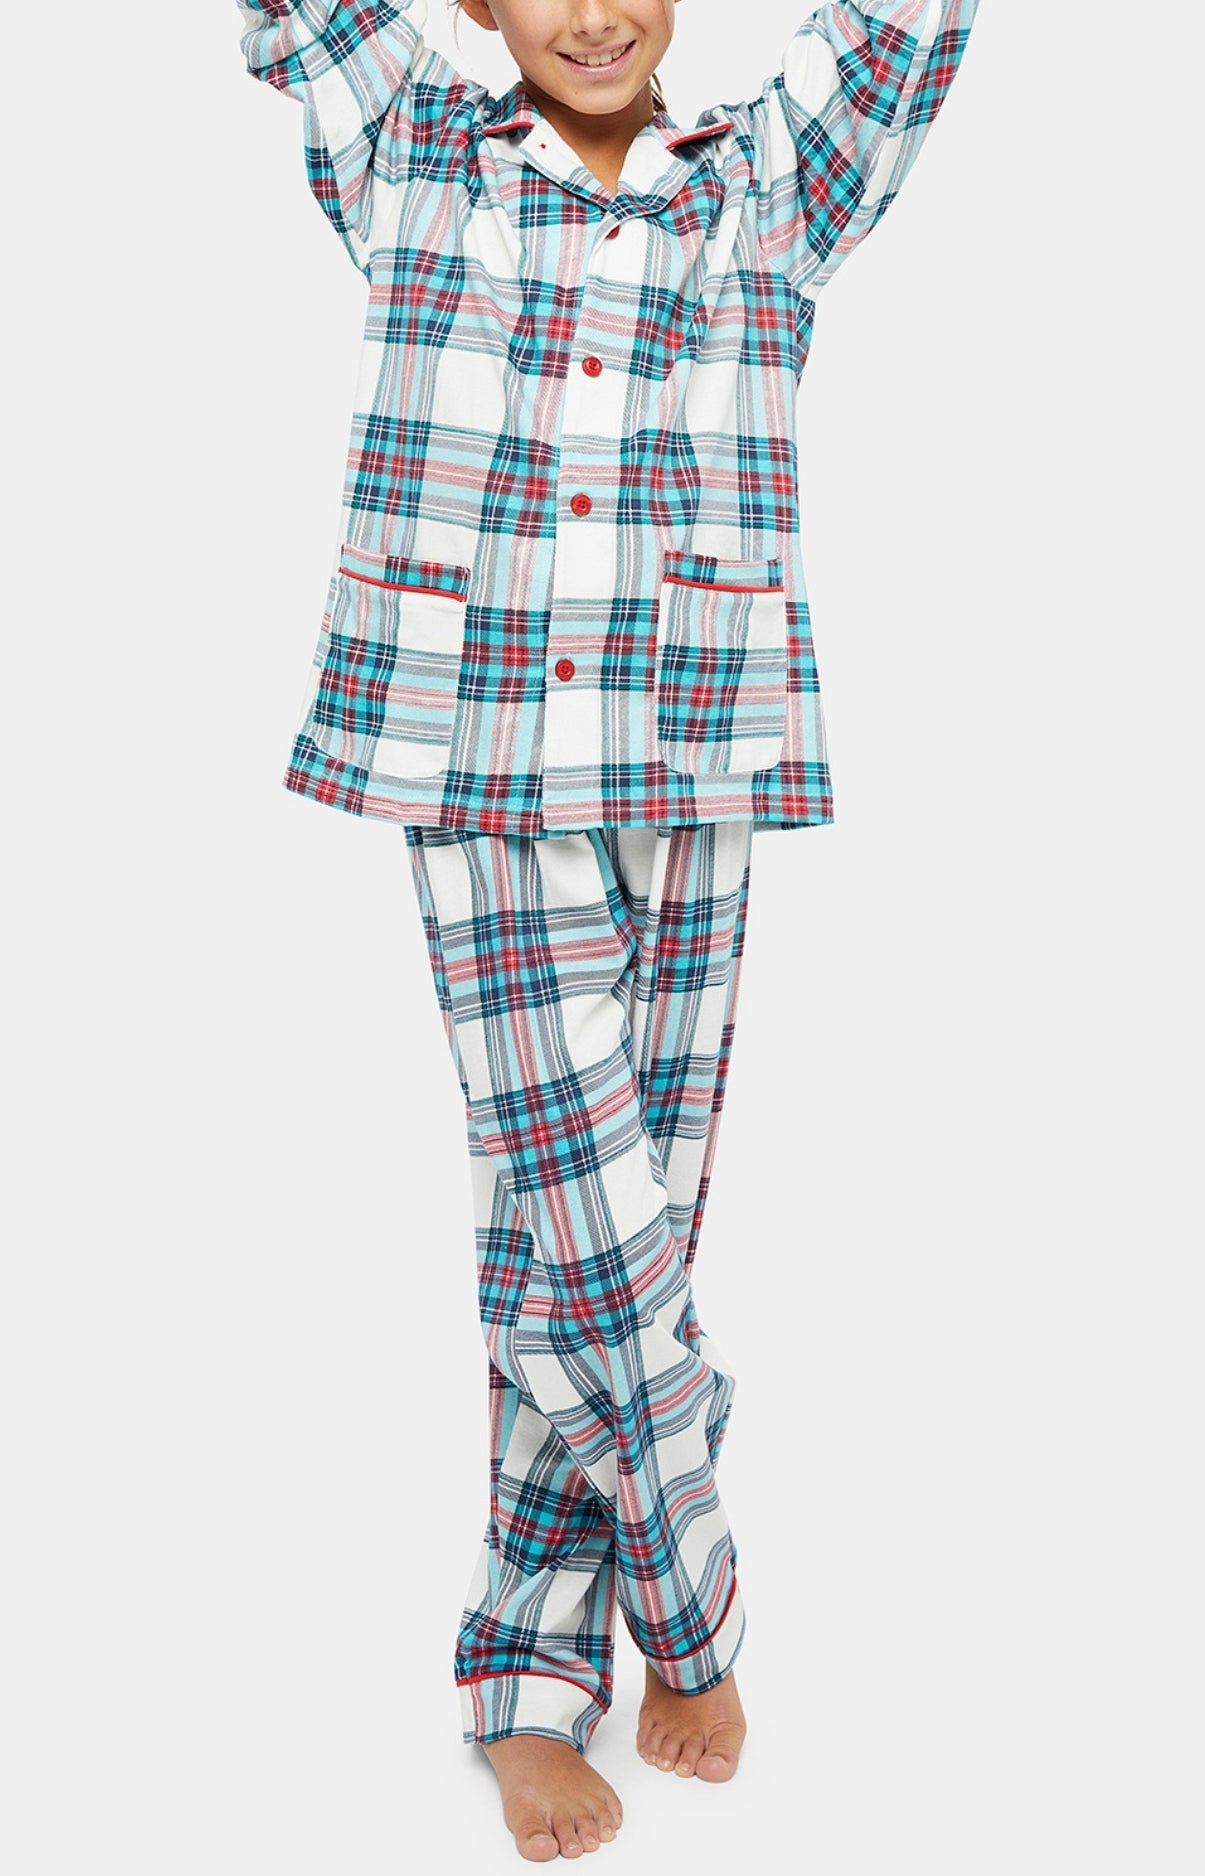 Pyjama boutonné Enfant - Honoré